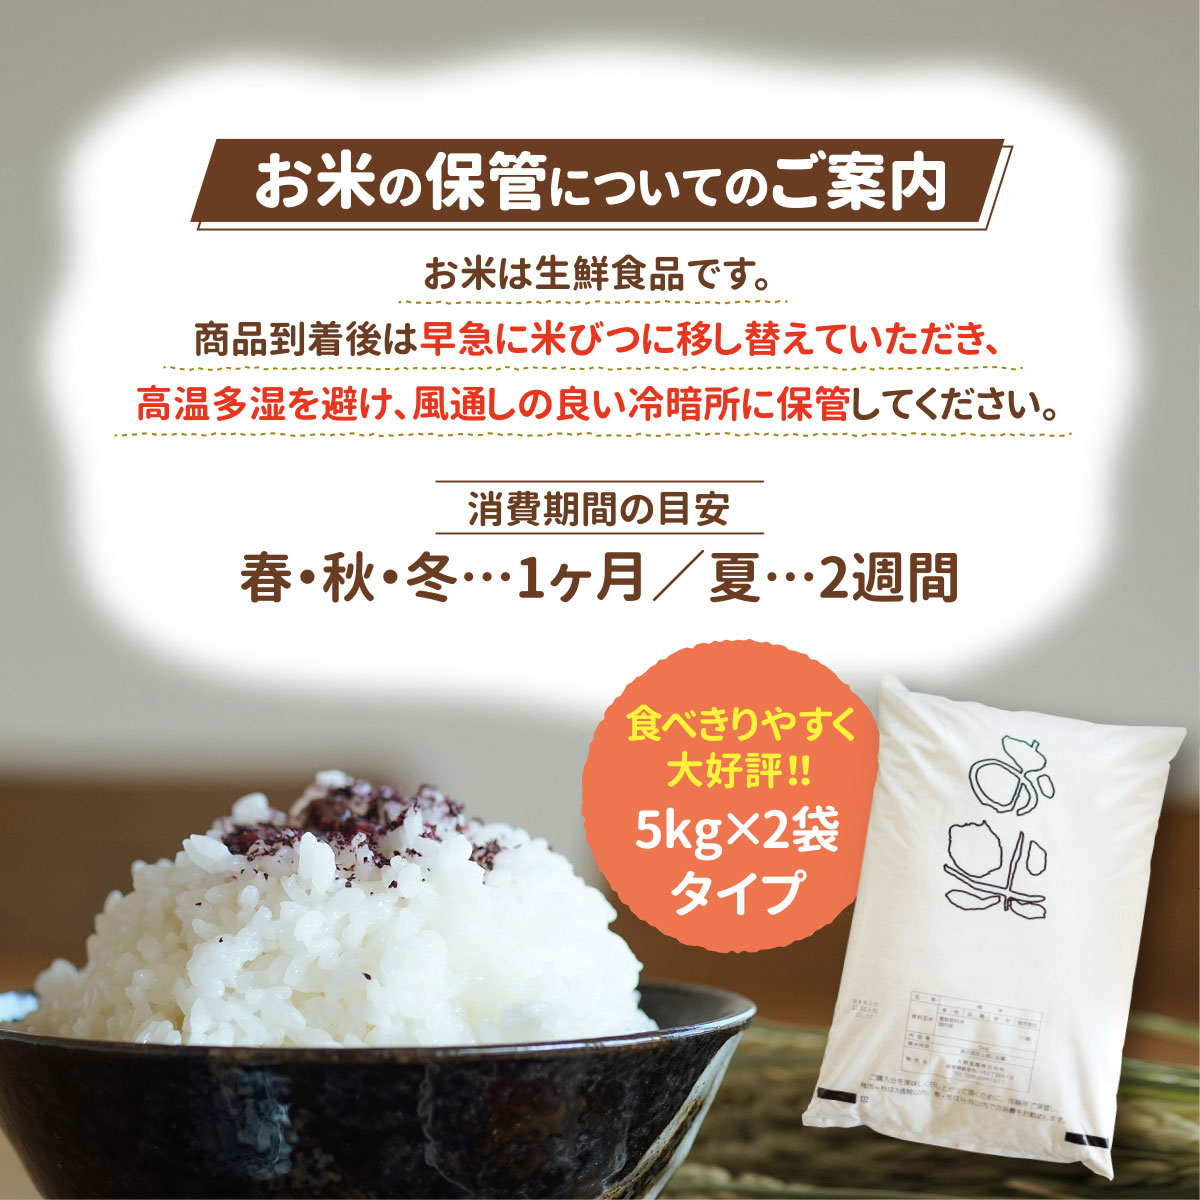 うまい米ショップブレンド米たべよまいをご購入の前にご確認ください